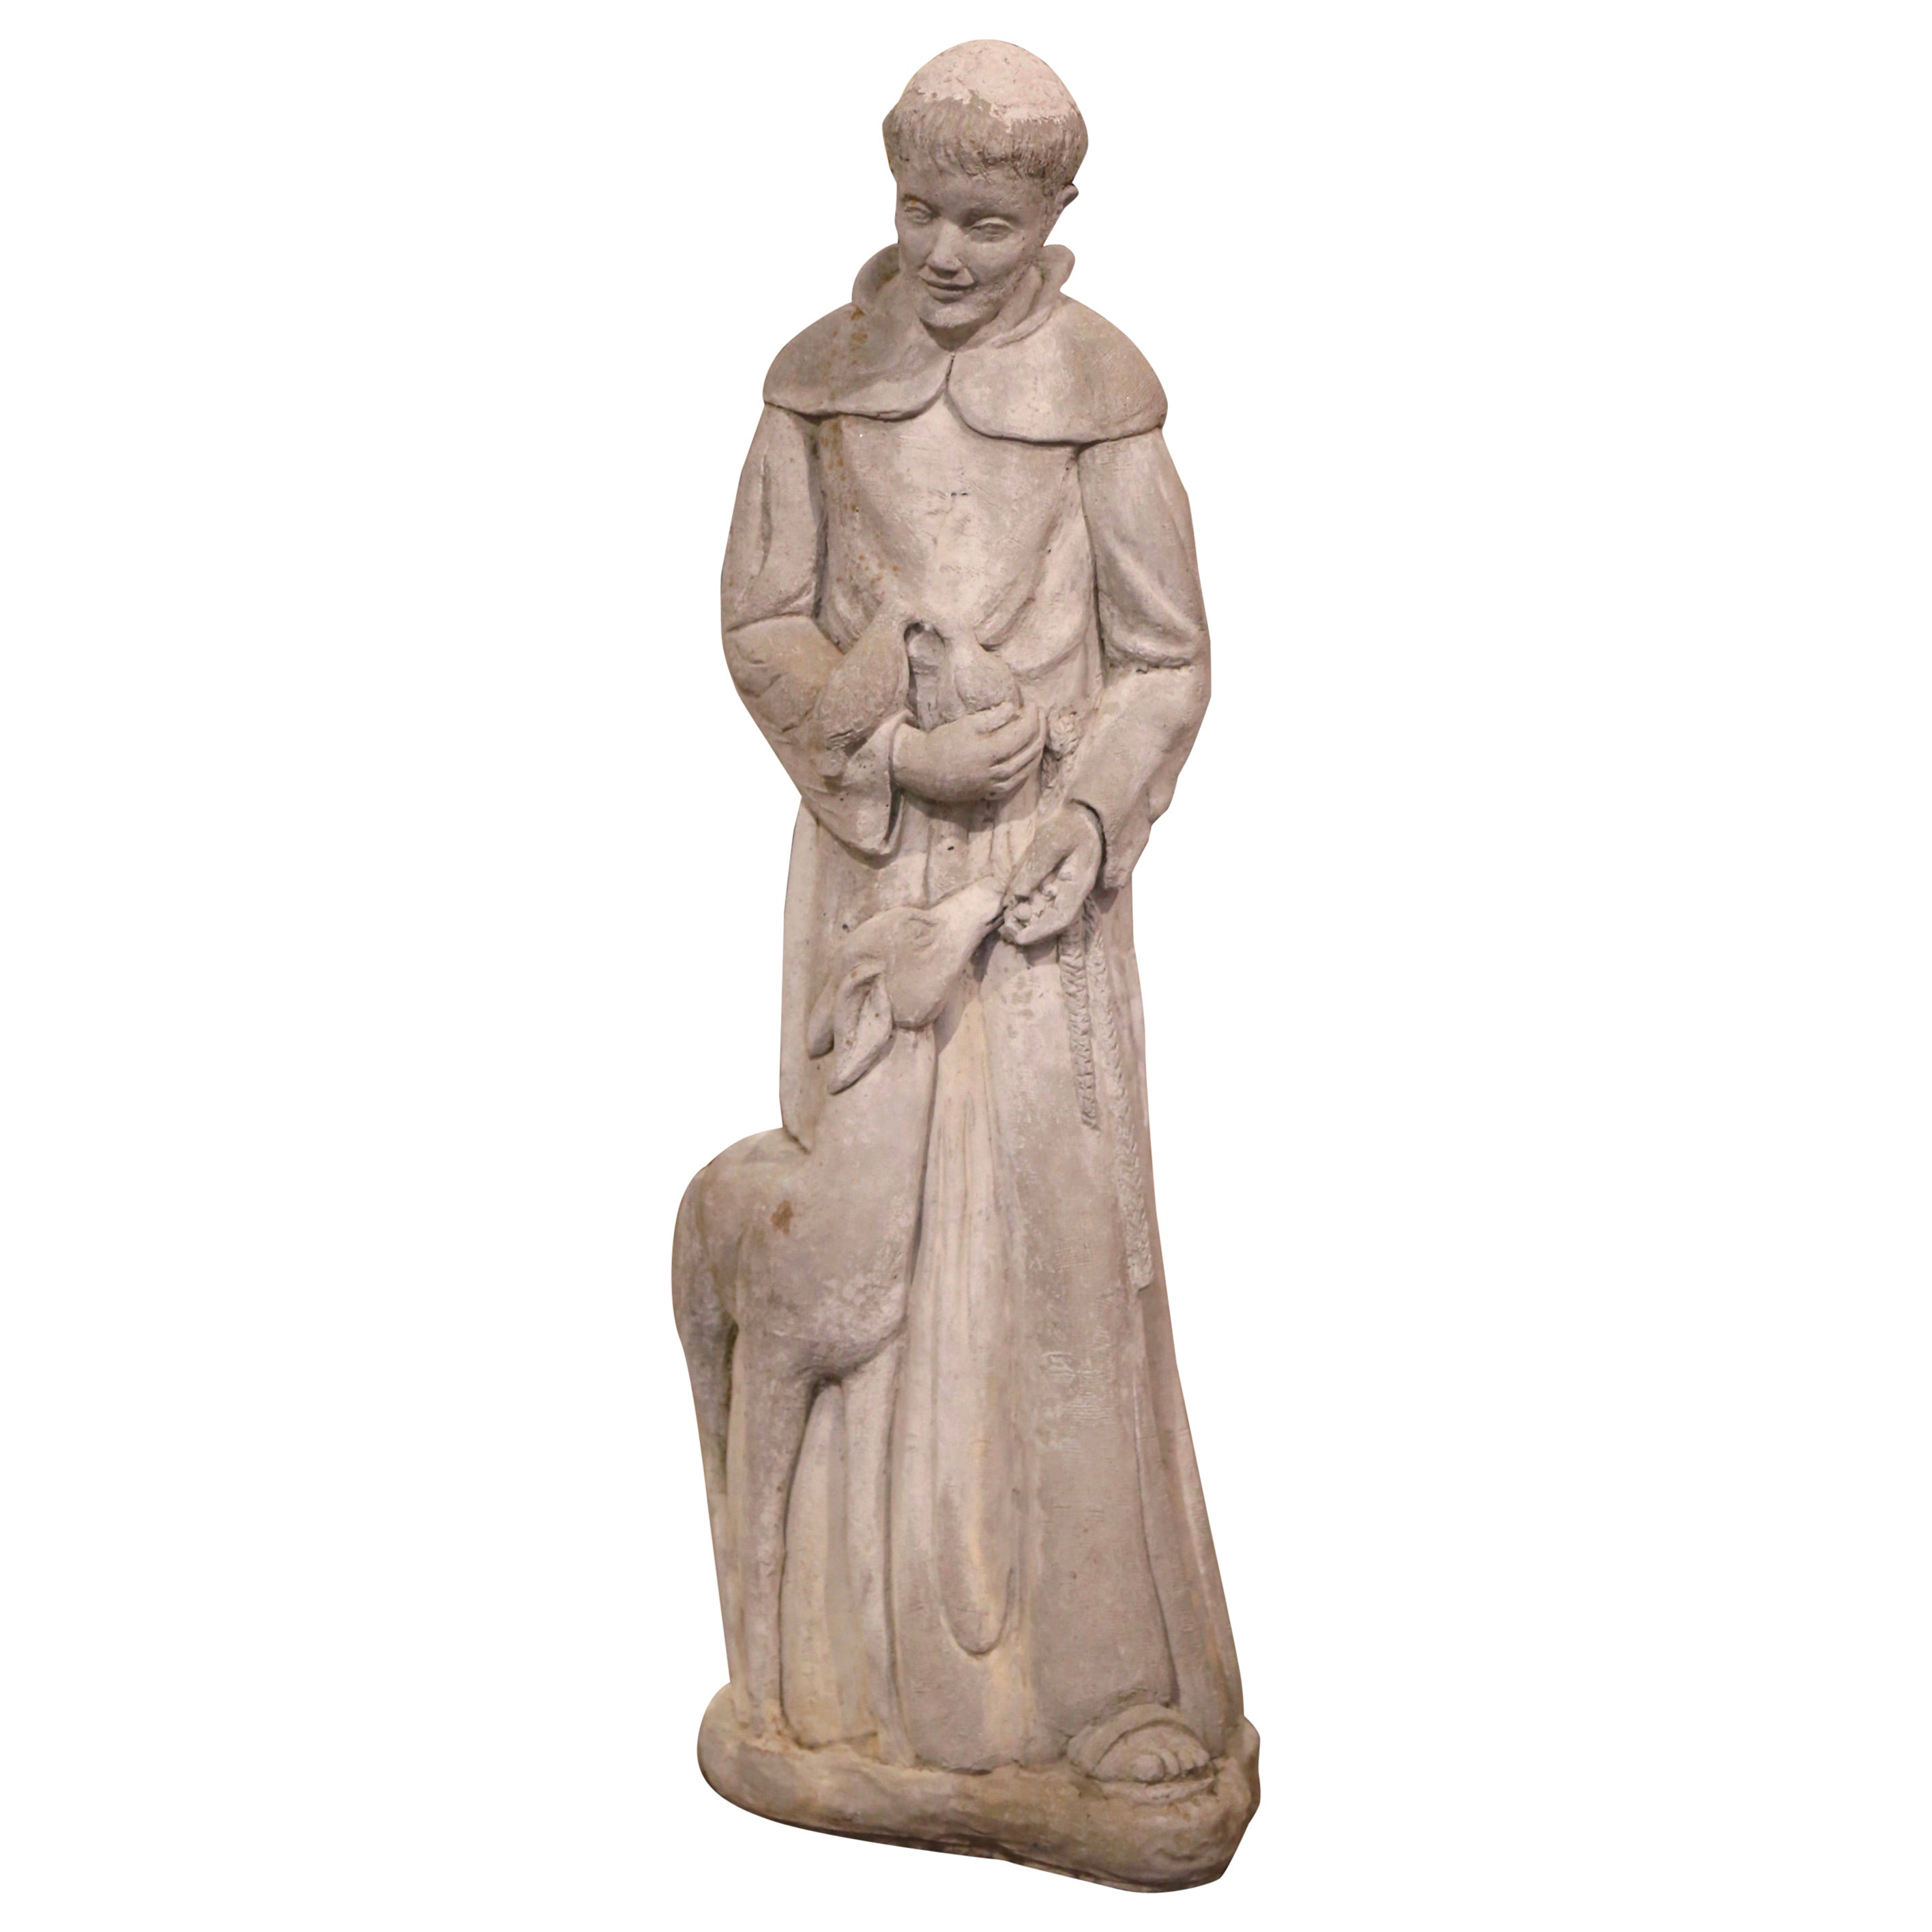 Statue française de Saint François en béton vieilli avec agneau et oiseaux, datée de 2001